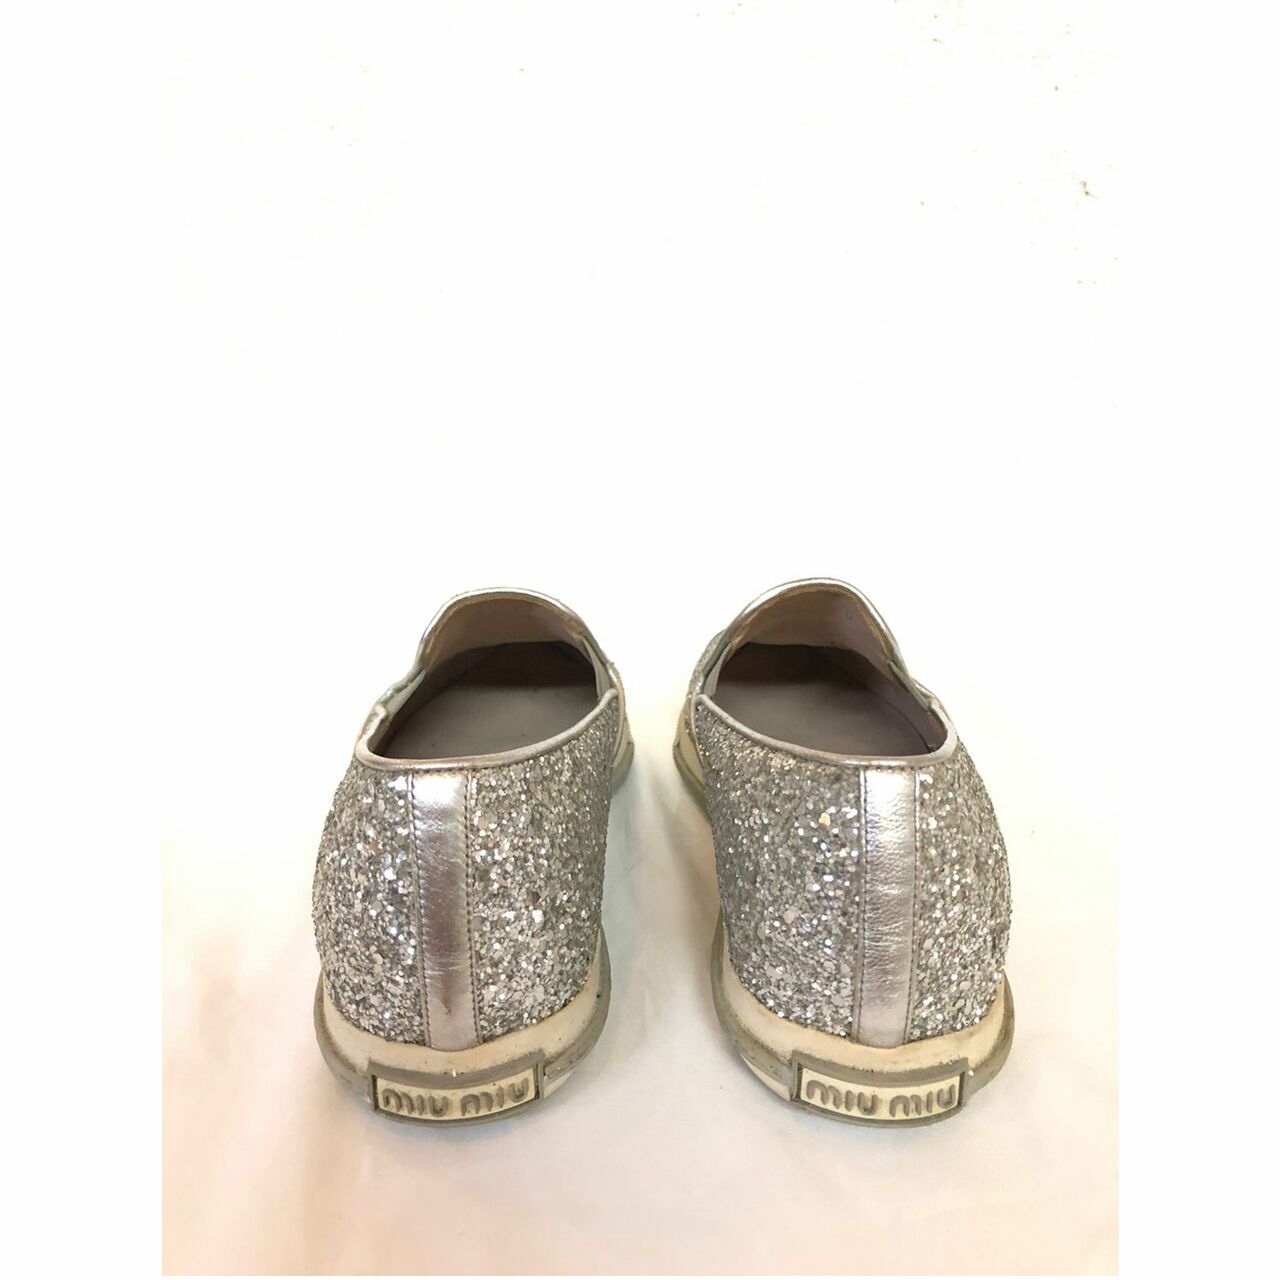 Miu Miu Calzature Donna Glitter Silver Shoes